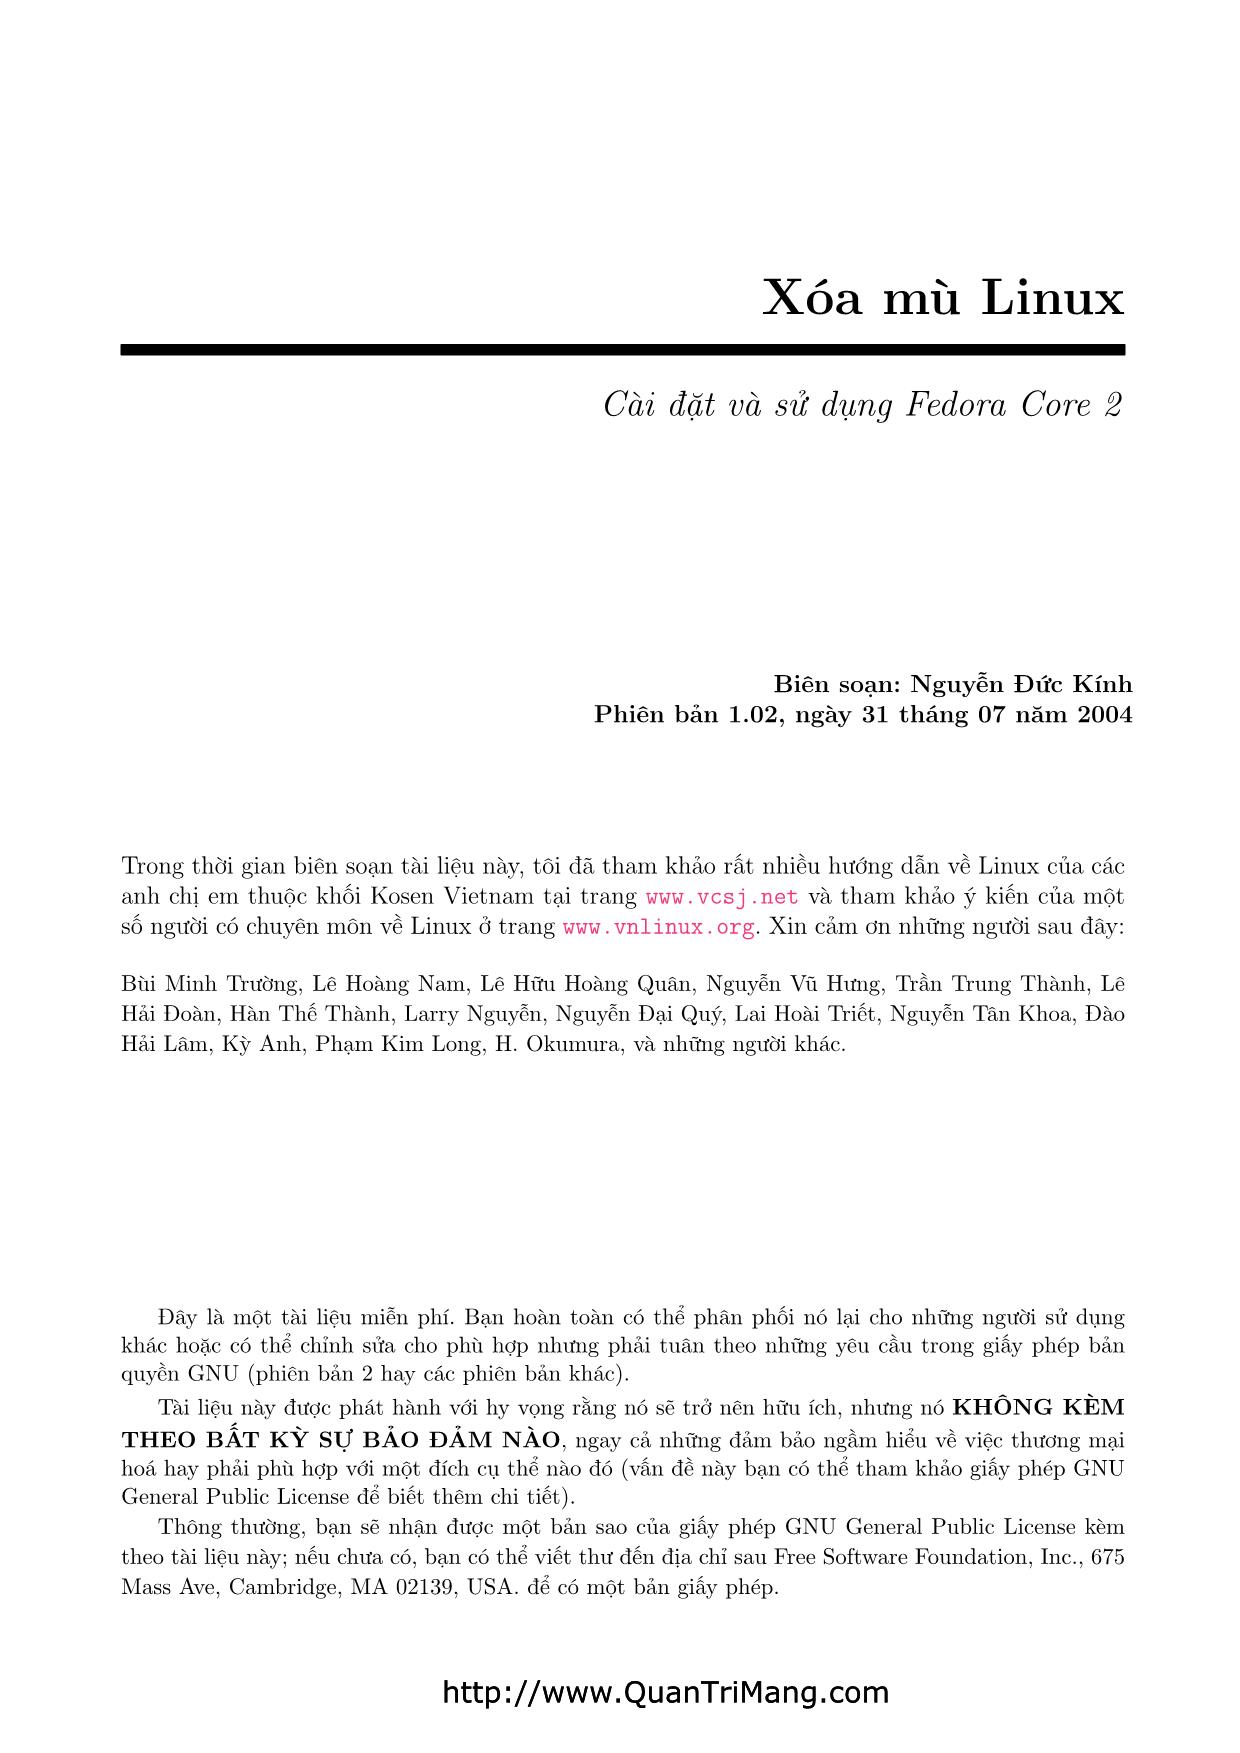 Xóa mù Linux - Cài đặt và sử dụng Fedora Core 2 trang 2